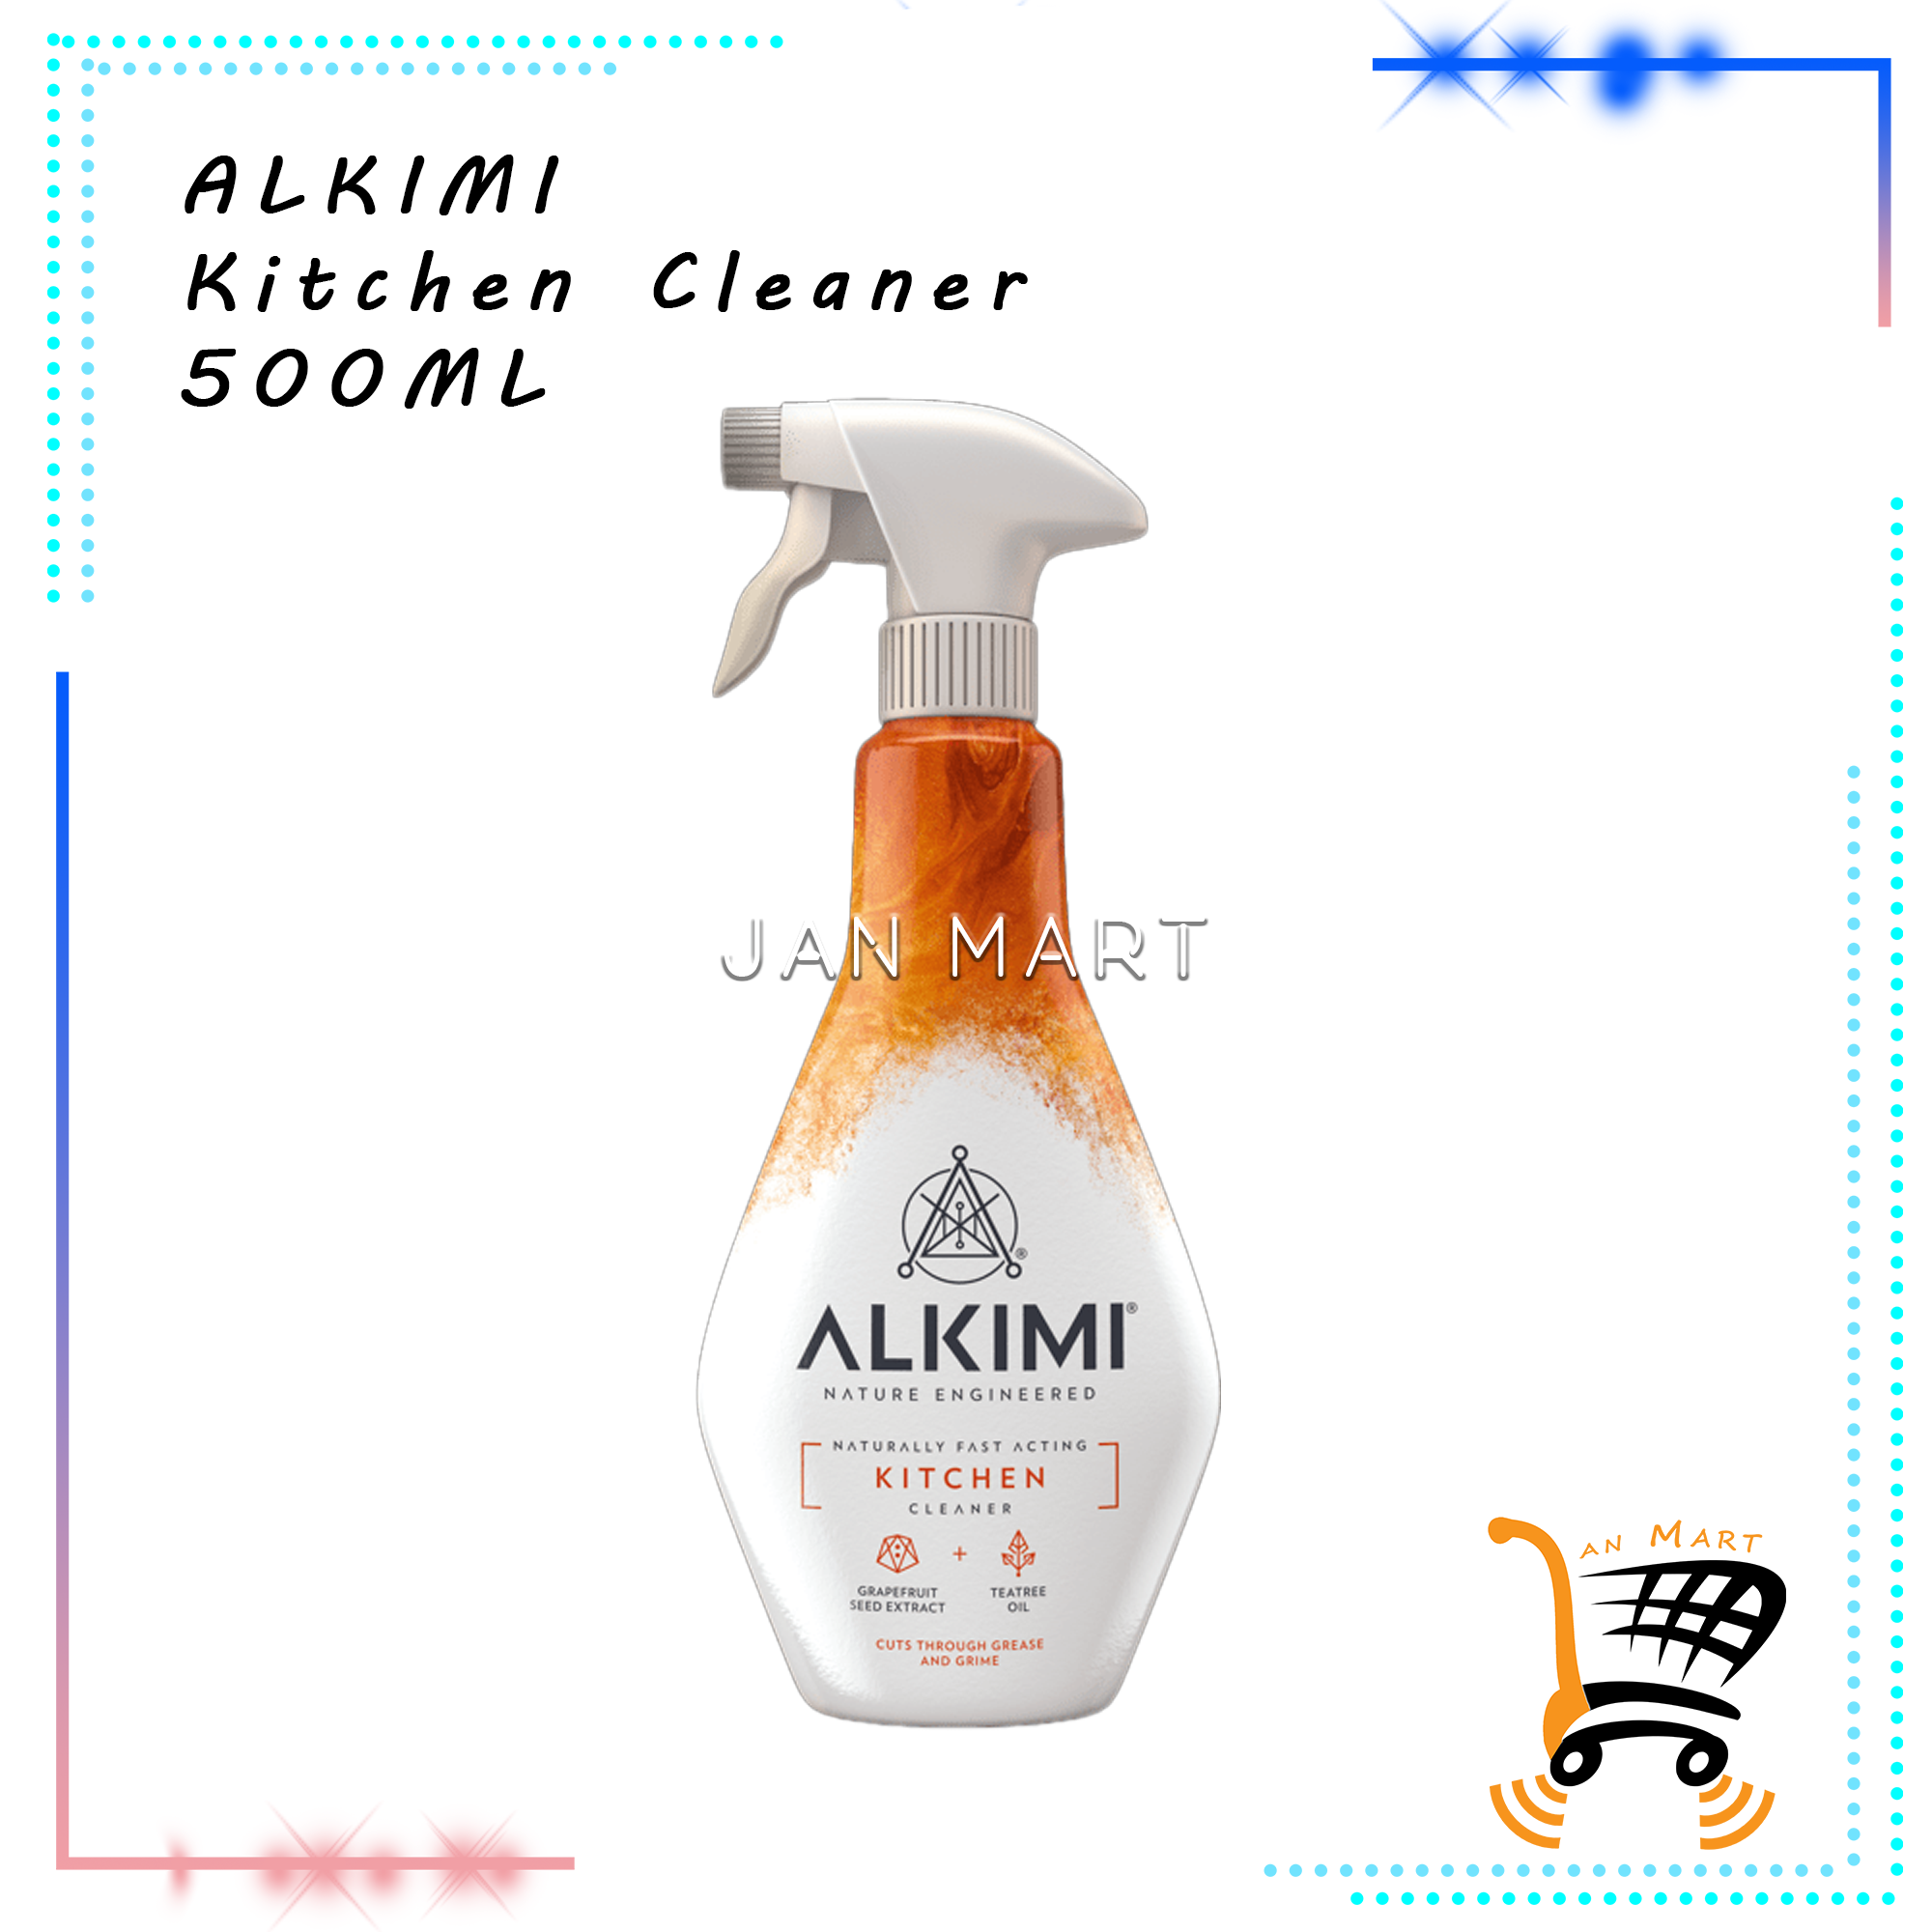 ALKIMI Kitchen Cleaner 500ML